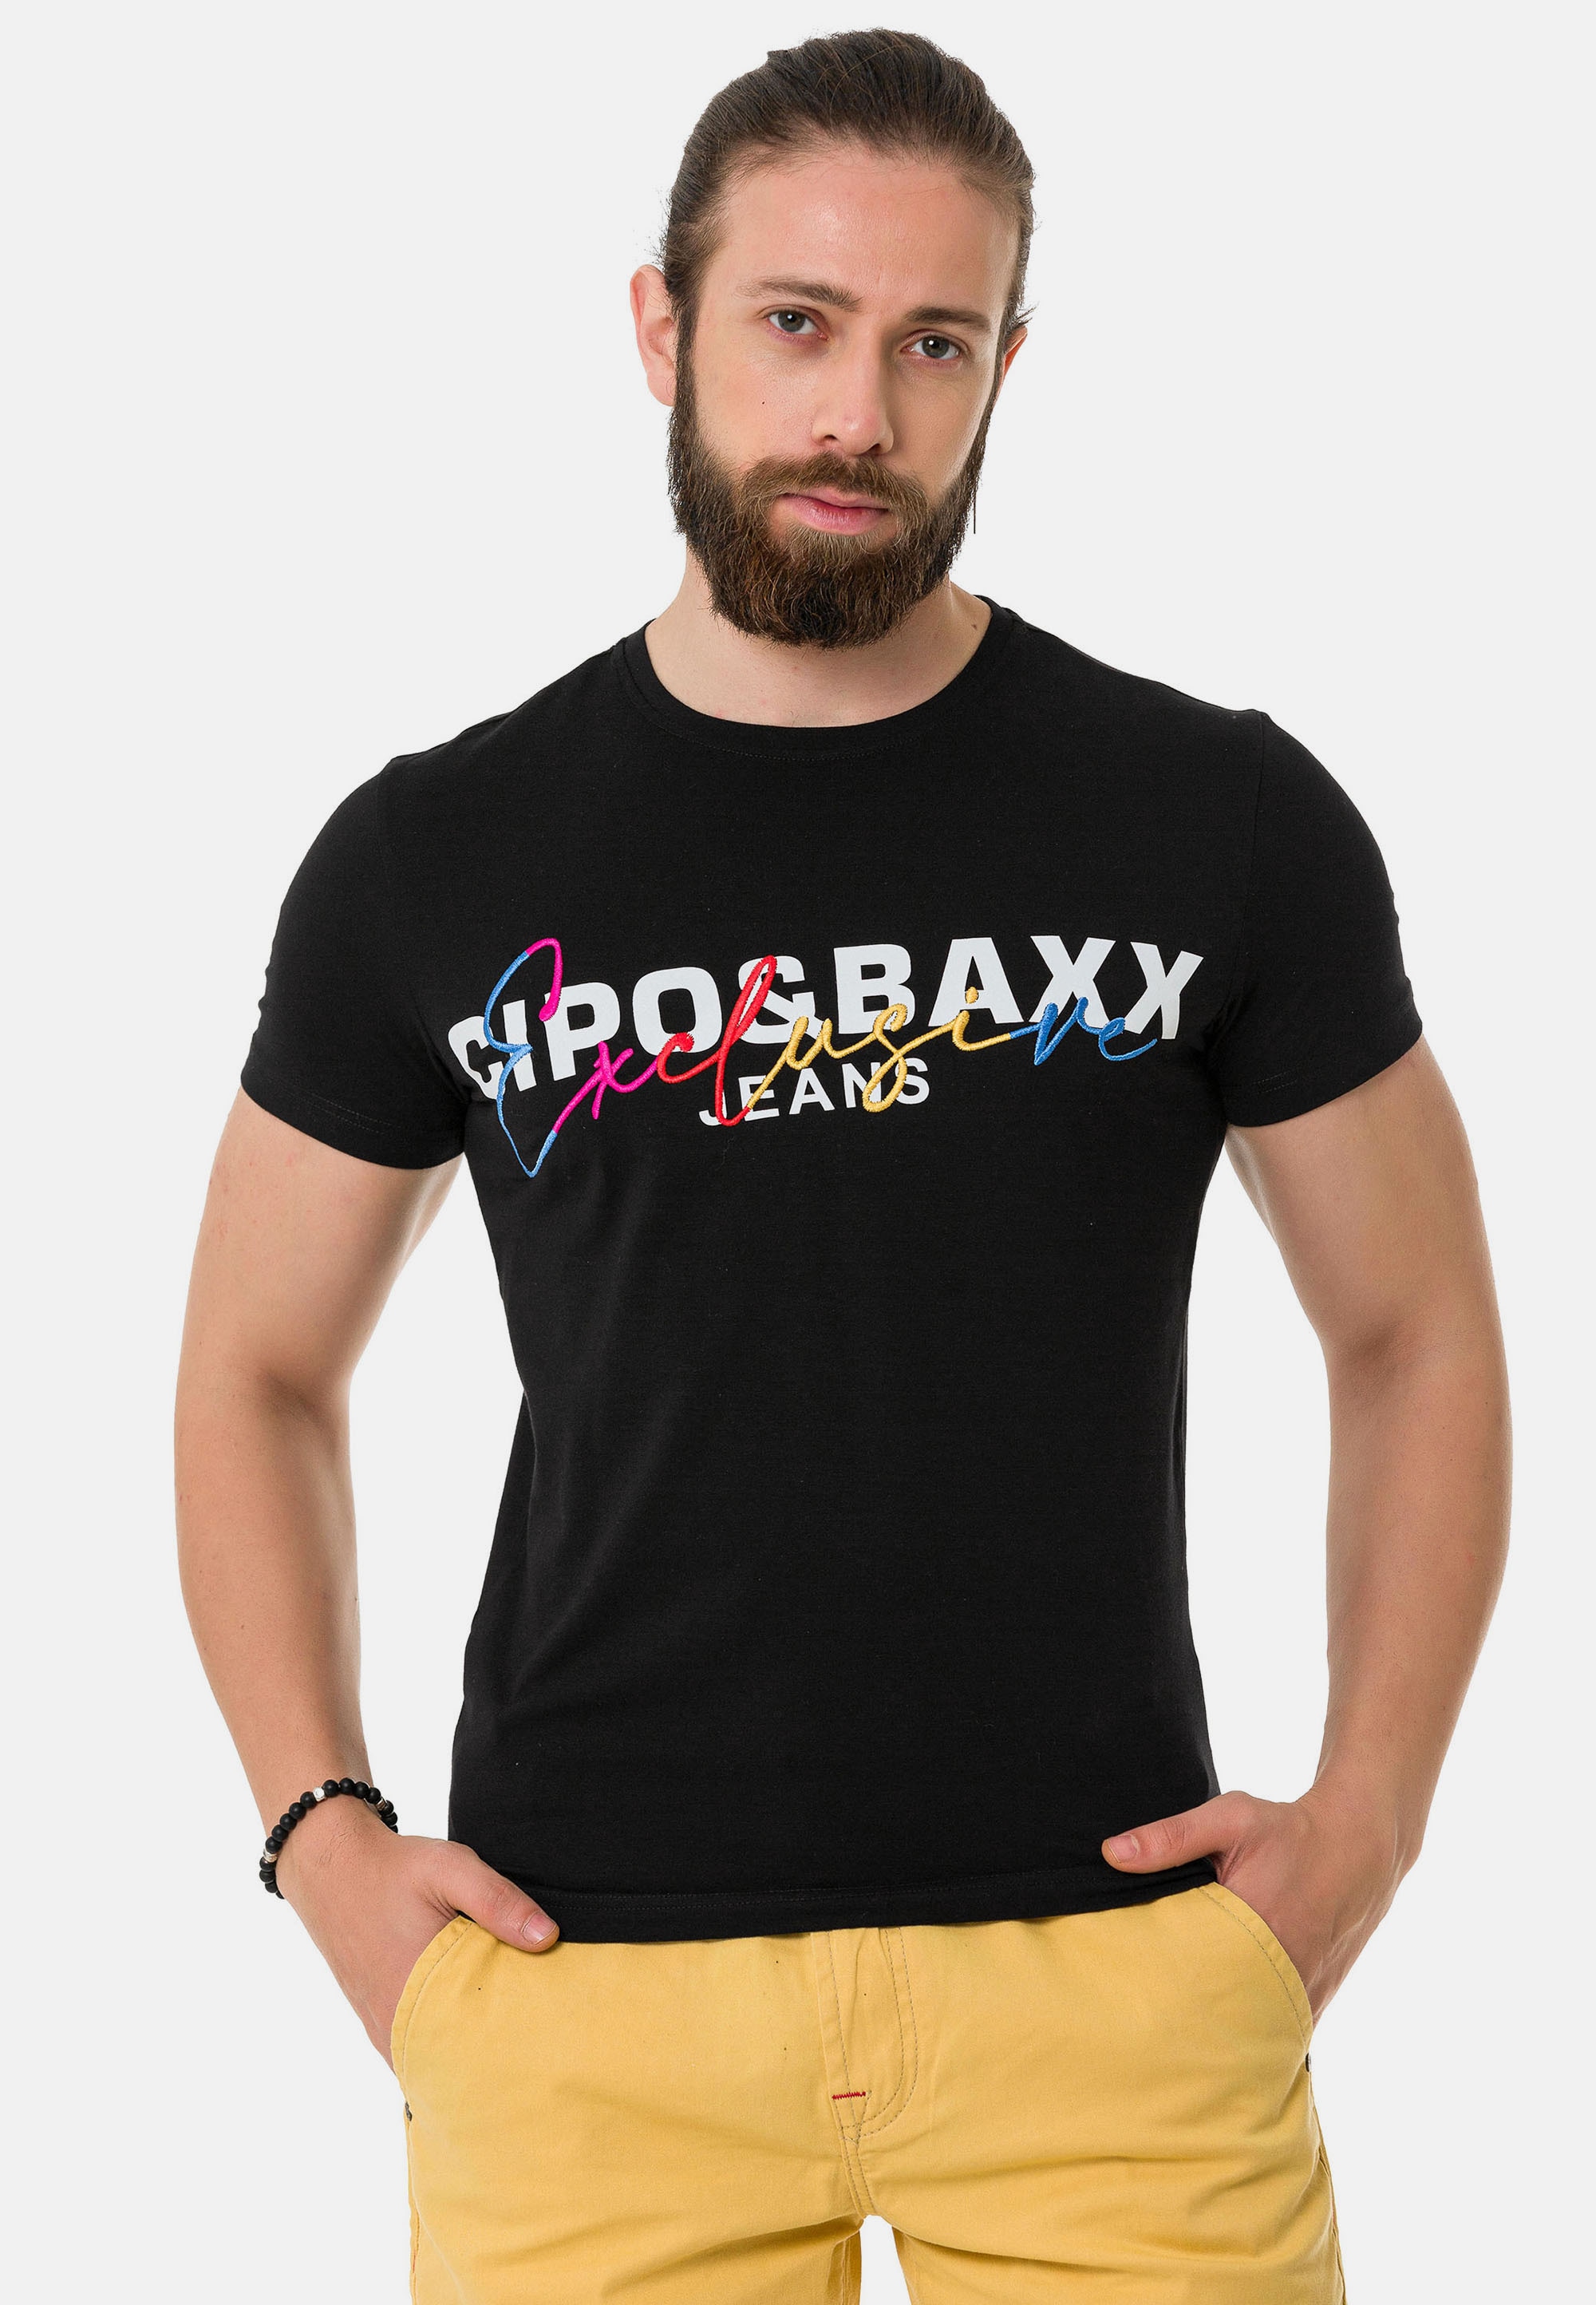 Cipo & Baxx T-Shirt, mit Markenprint